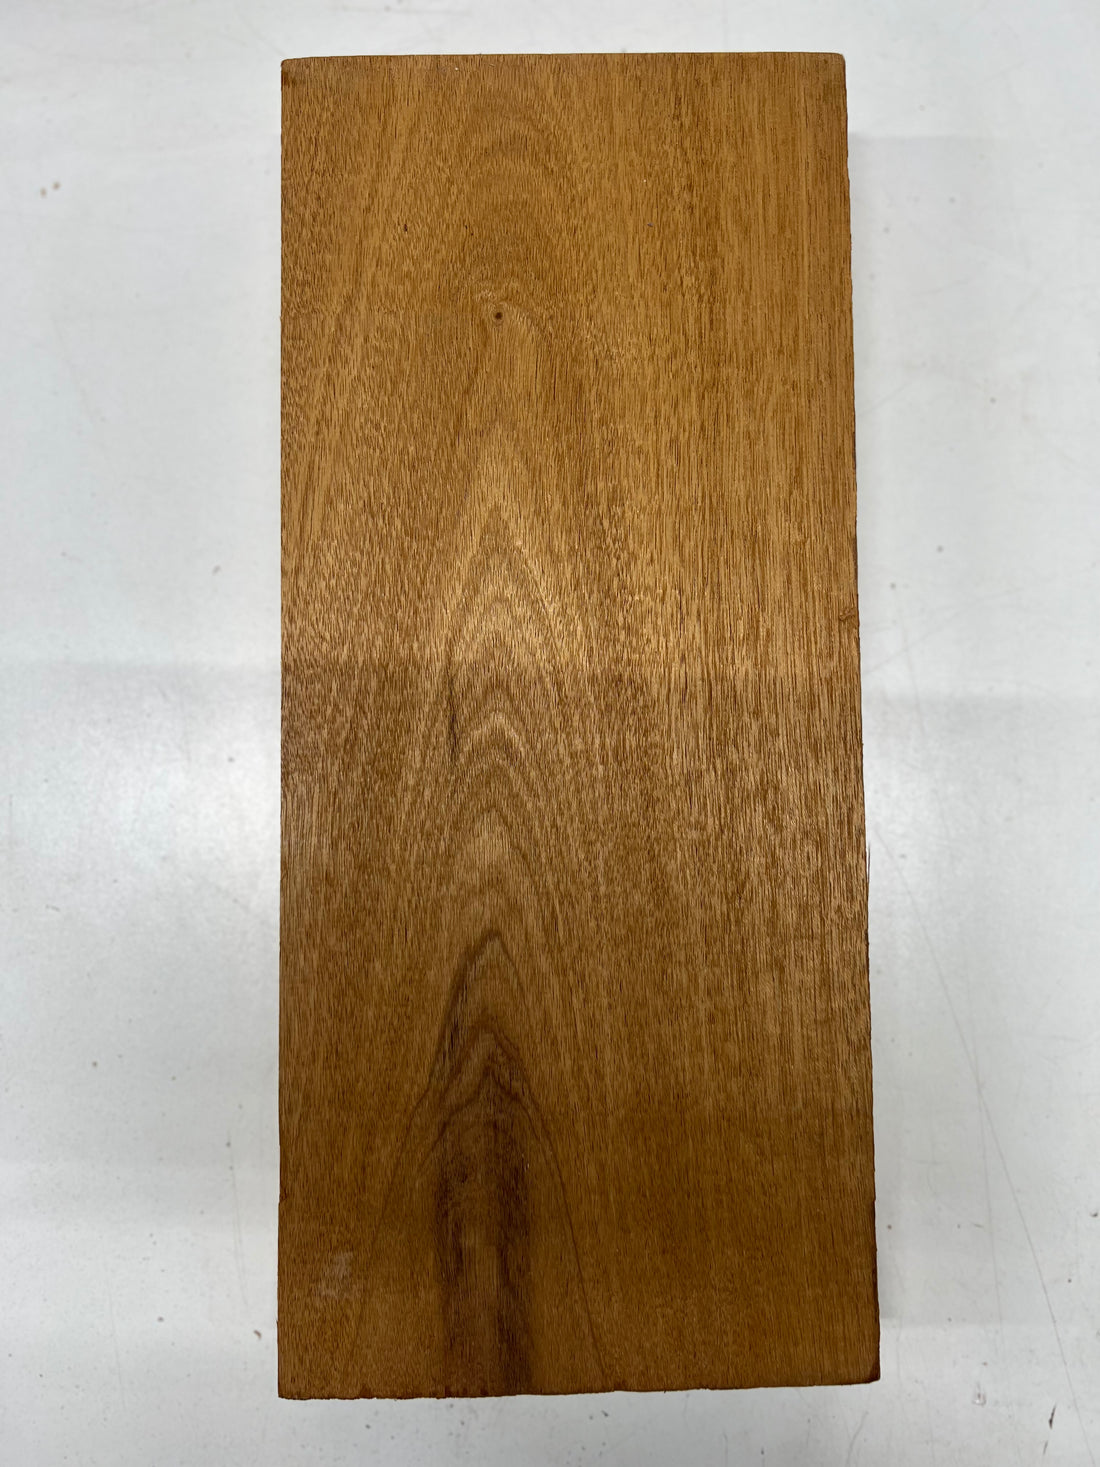 Honduran Mahogany Lumber Board Wood Blank 16&quot;x7&quot;x2&quot; 